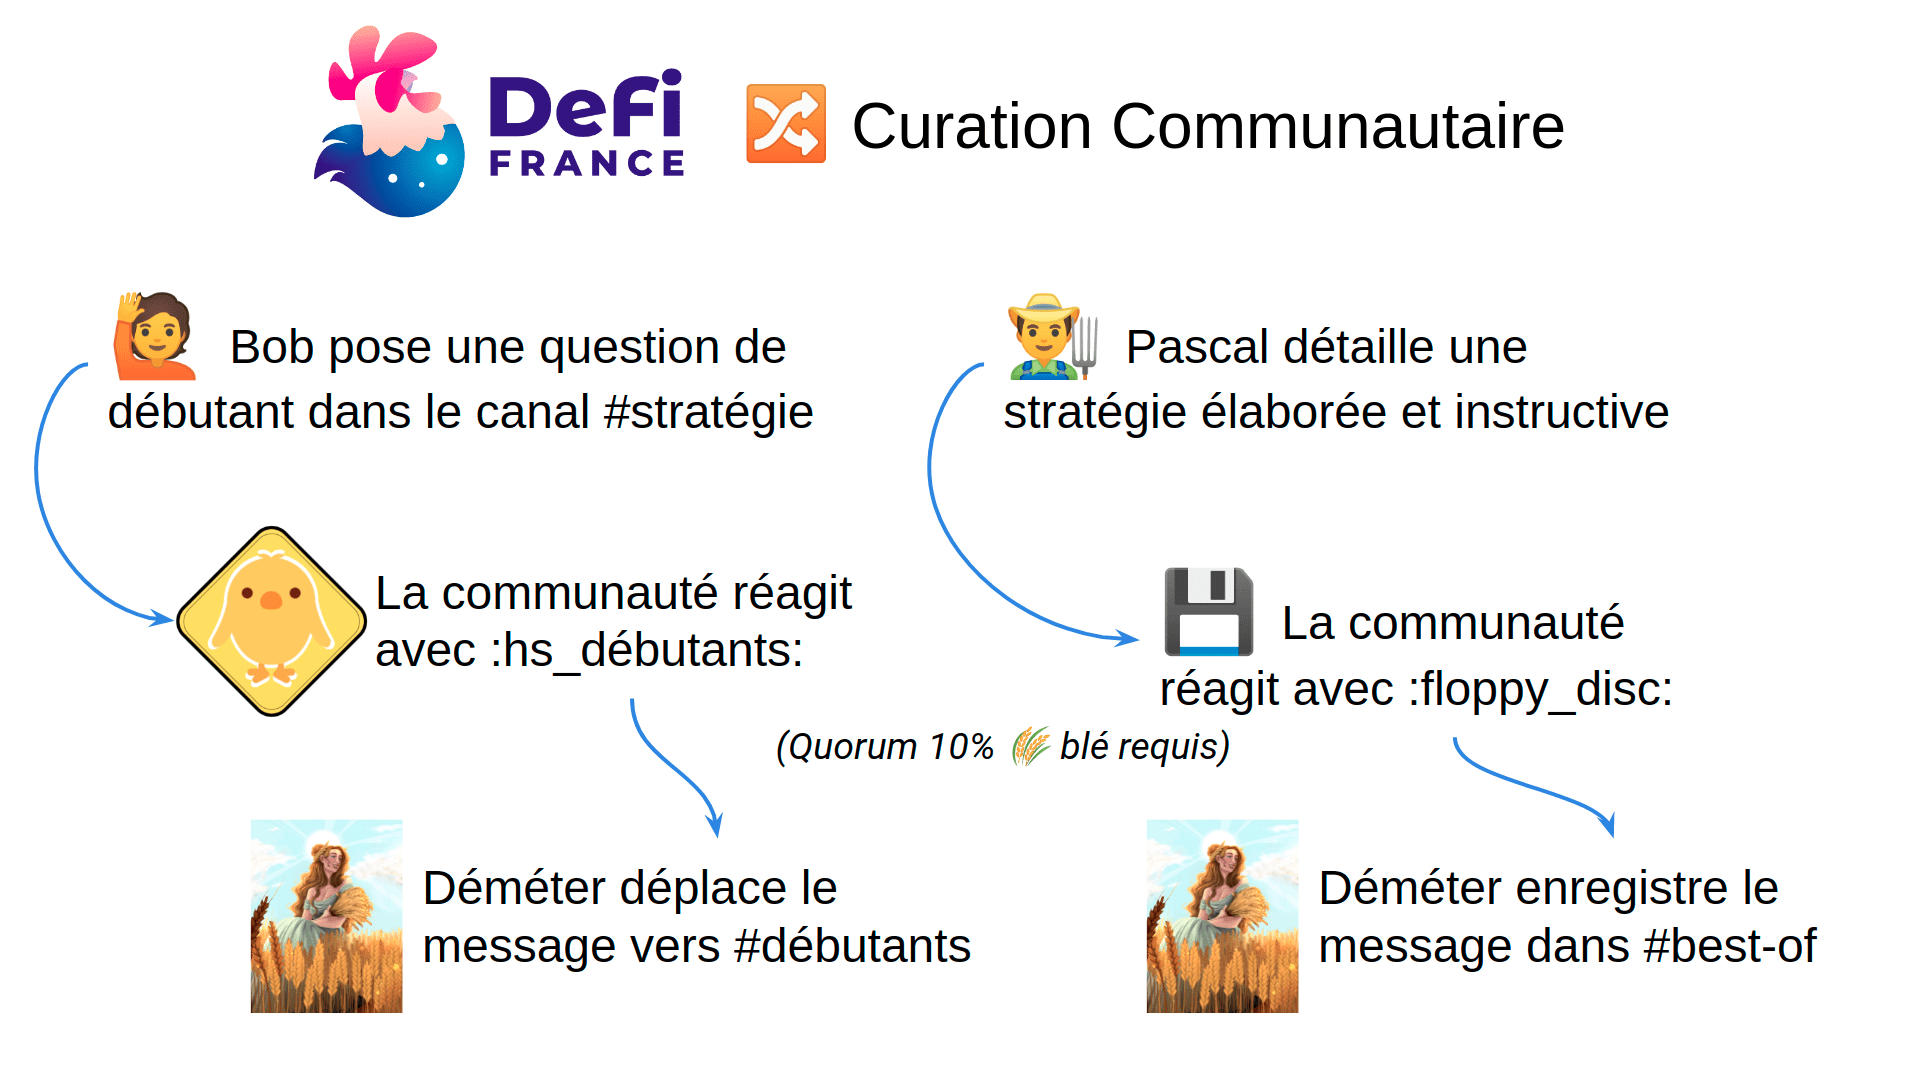 dffv2-curation-communautaire